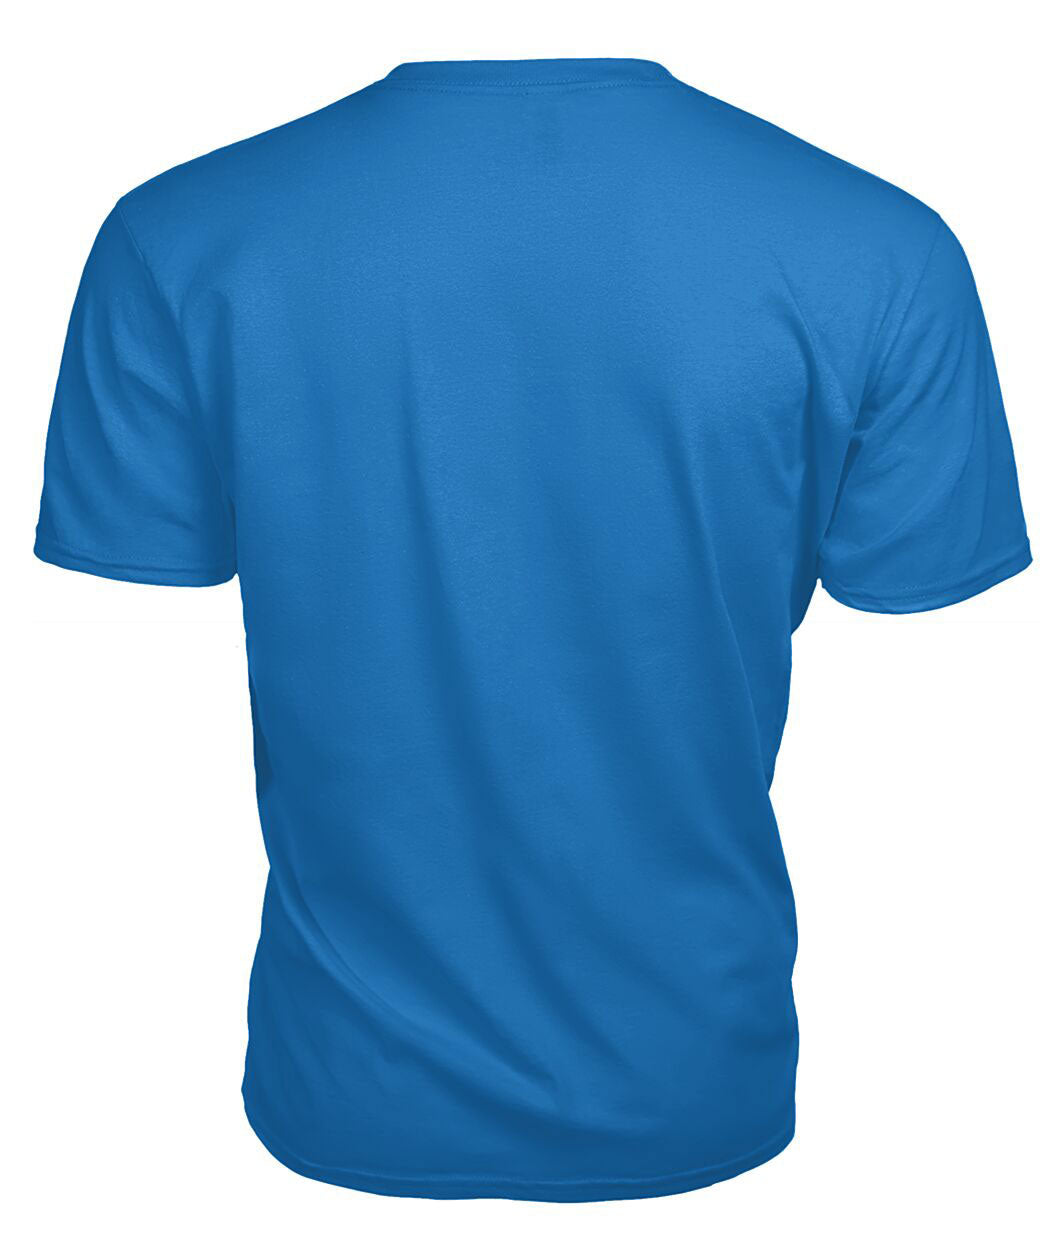 Horsburgh Tartan Crest 2D T-shirt - Blood Runs Through My Veins Style